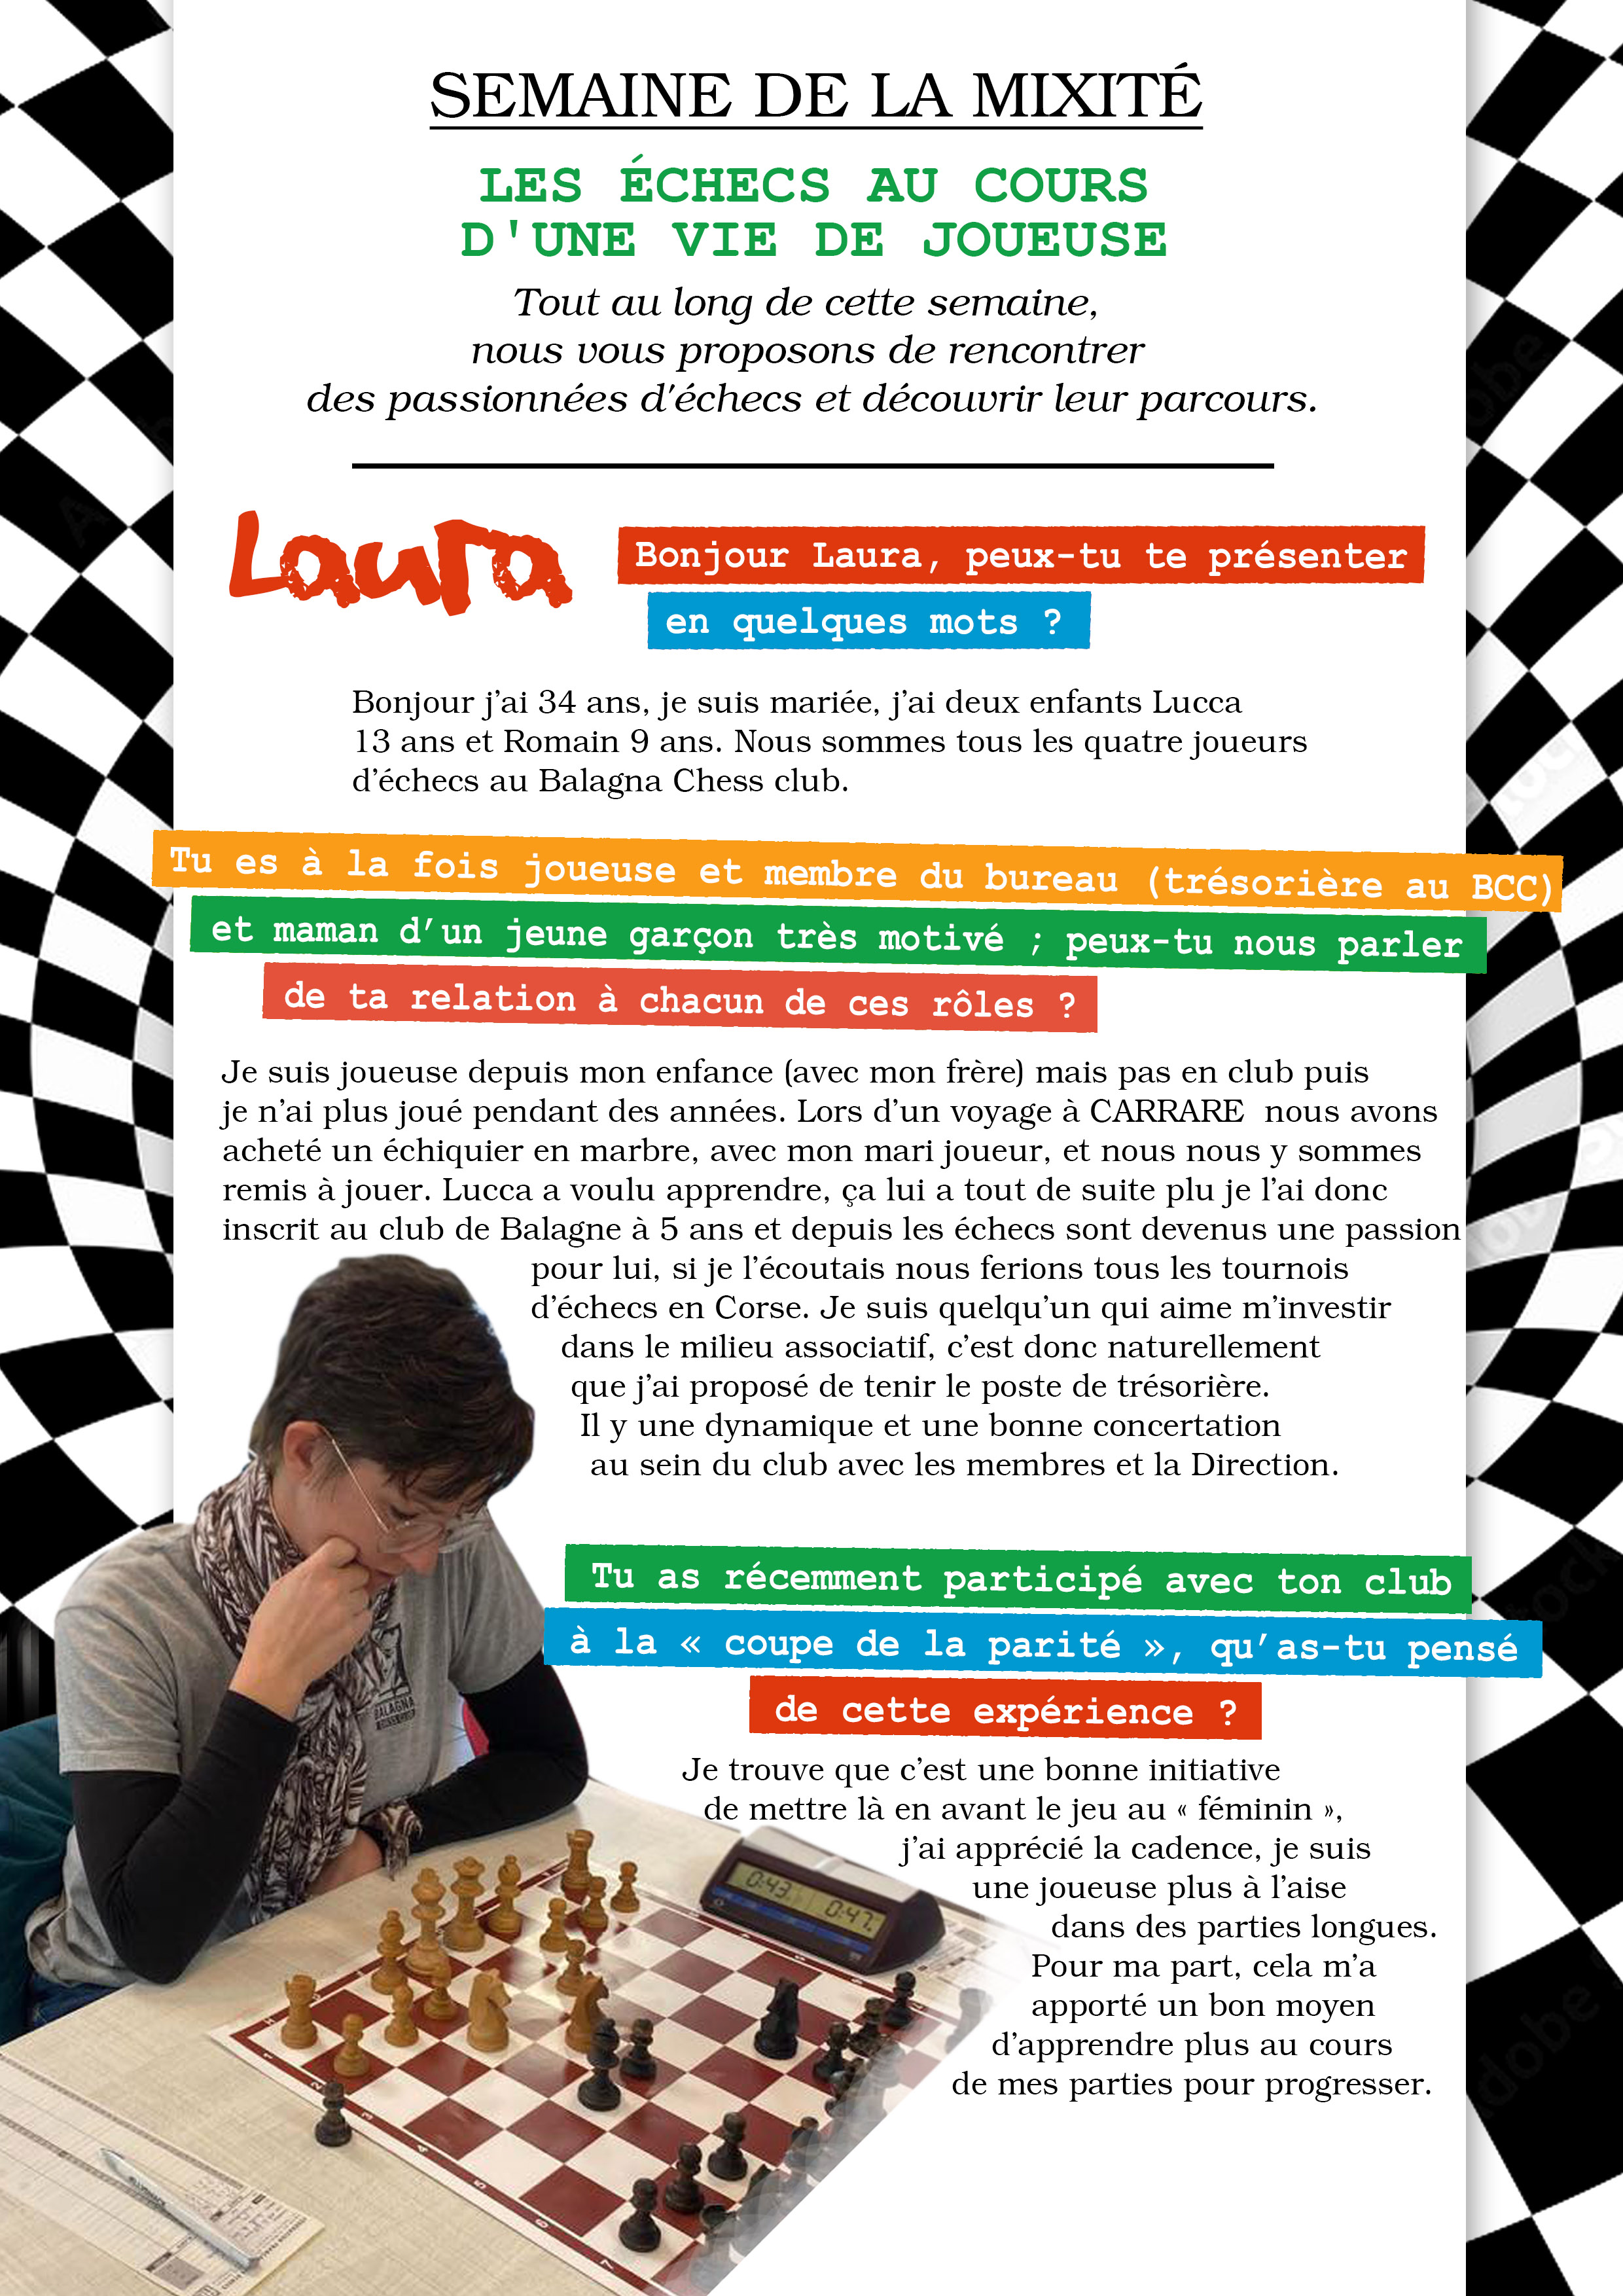 Les échecs au féminin : découvrez le parcours de passionnées à travers la semaine de la Mixité